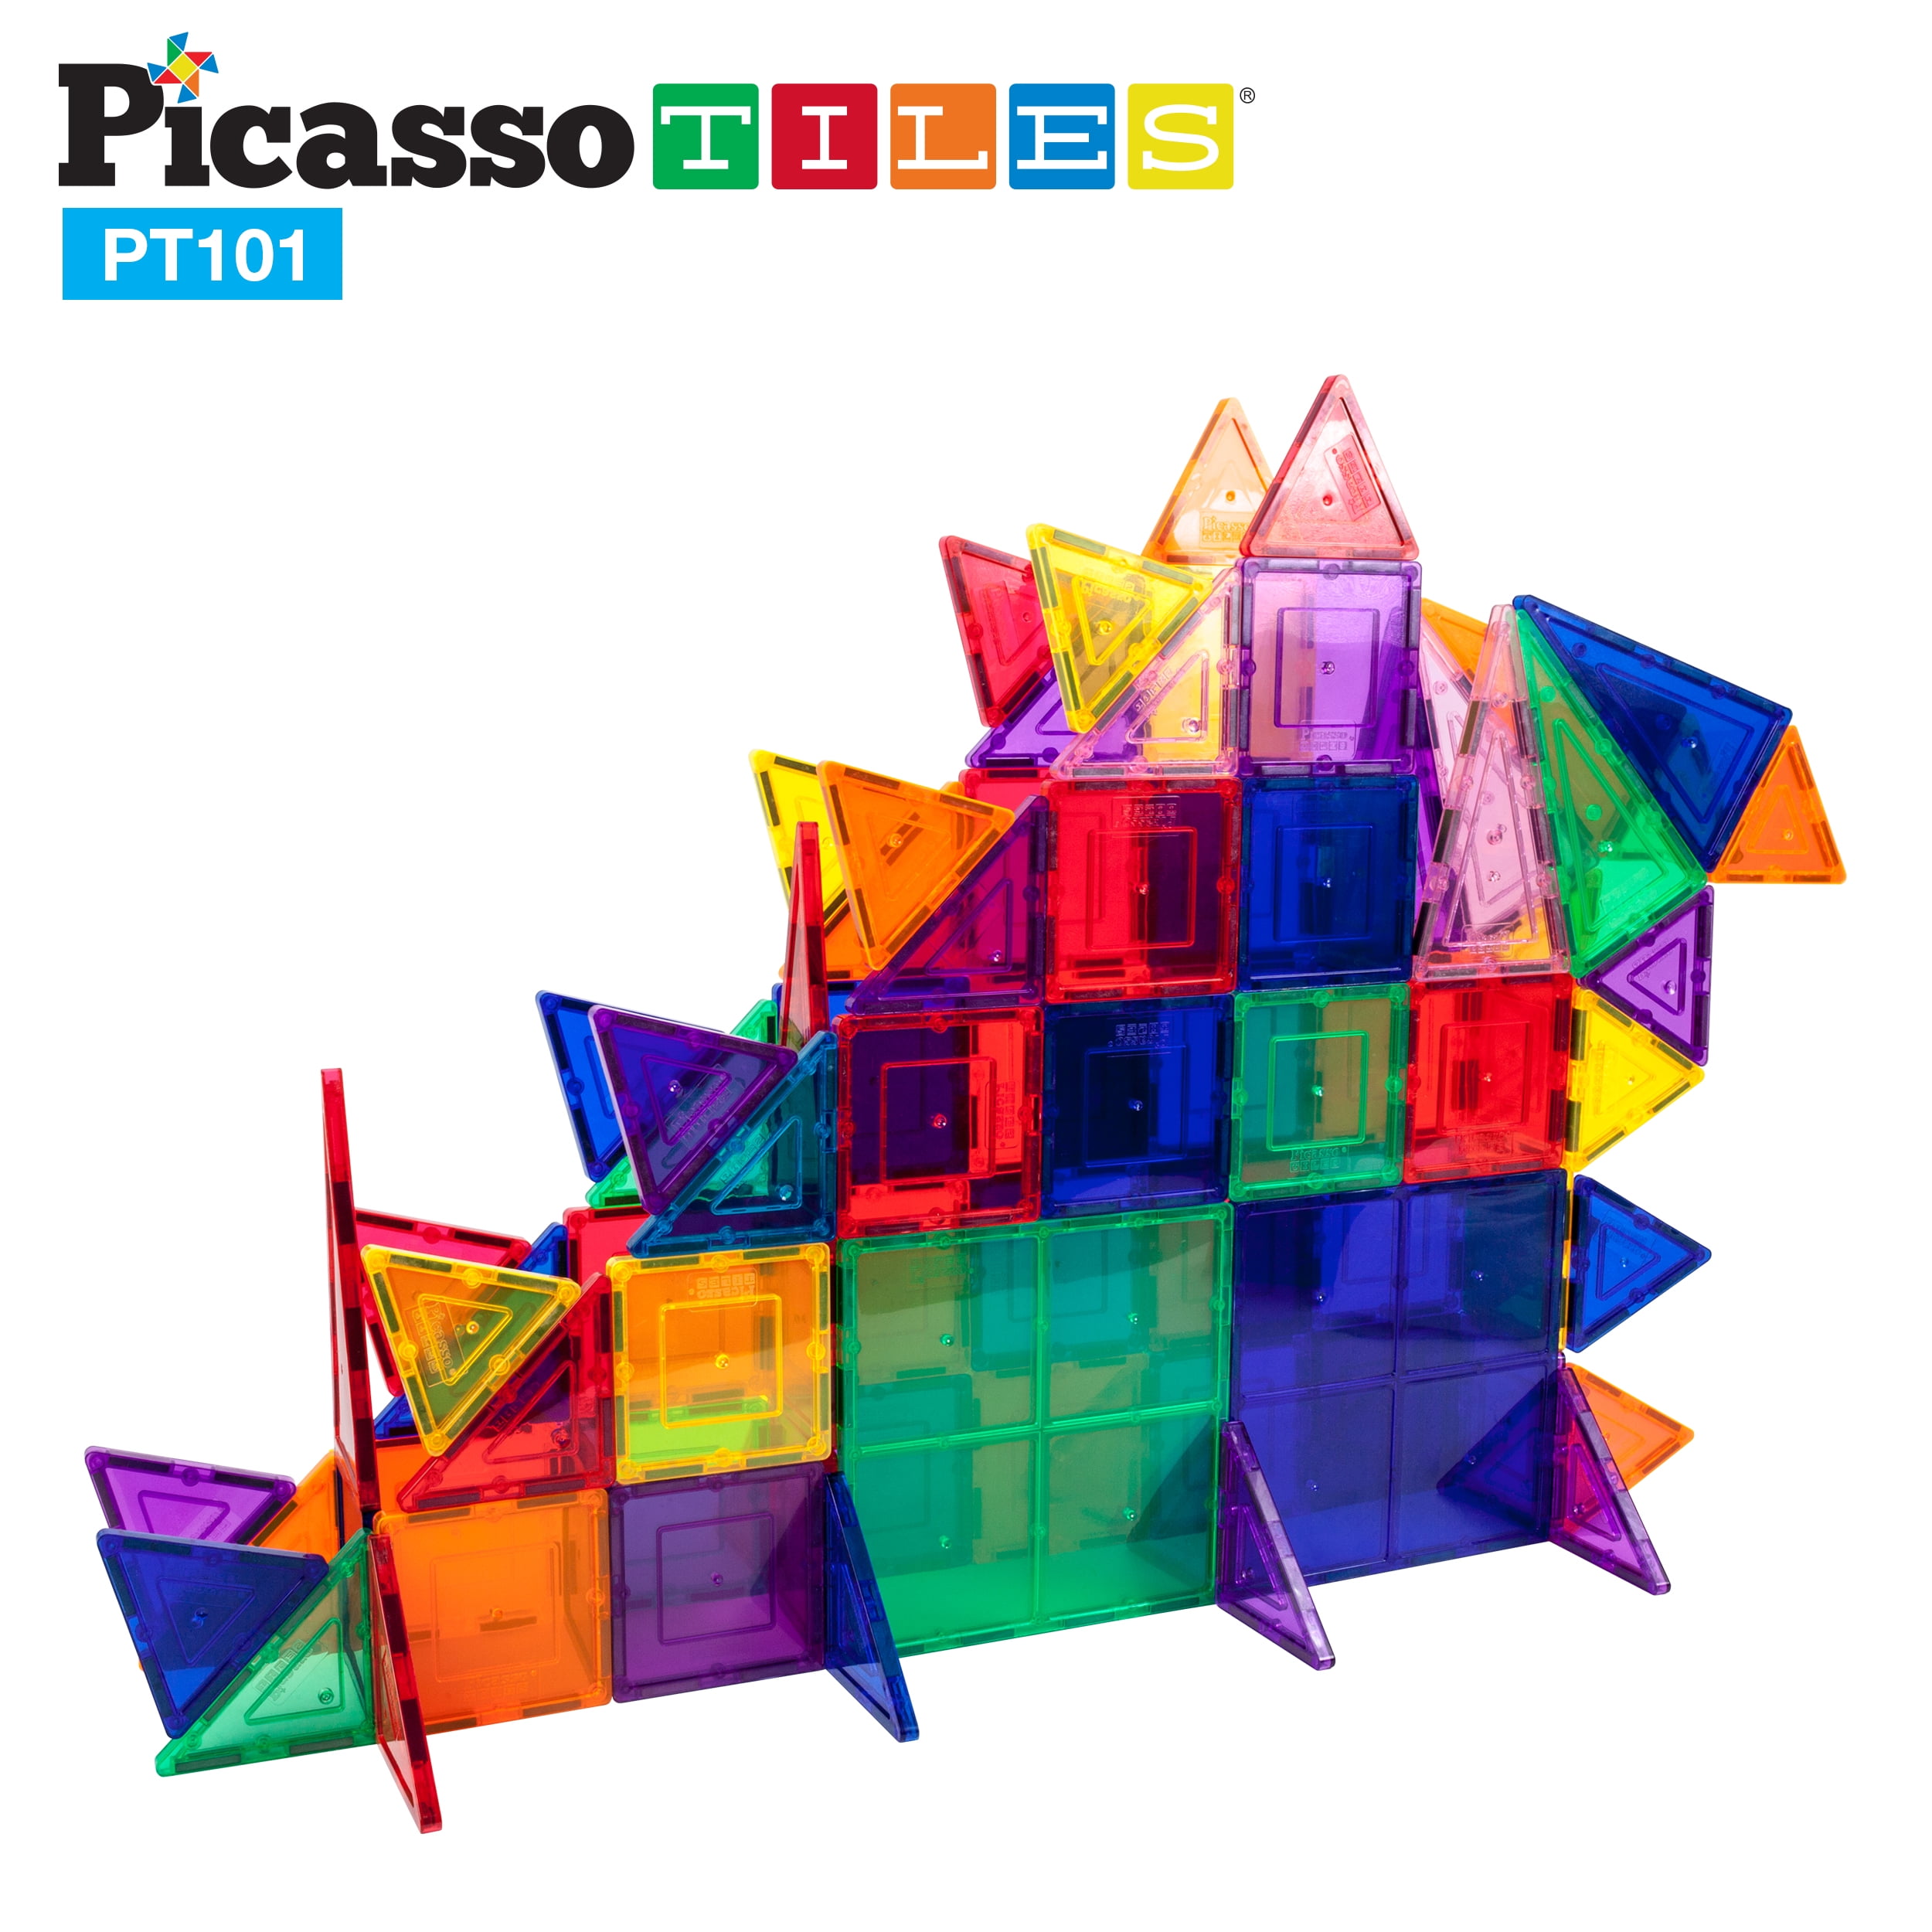 PicassoTiles 101 Piece Magnetic Building Block 101pc Set Magnet Construction Toy, Multicolor - Walmart.com